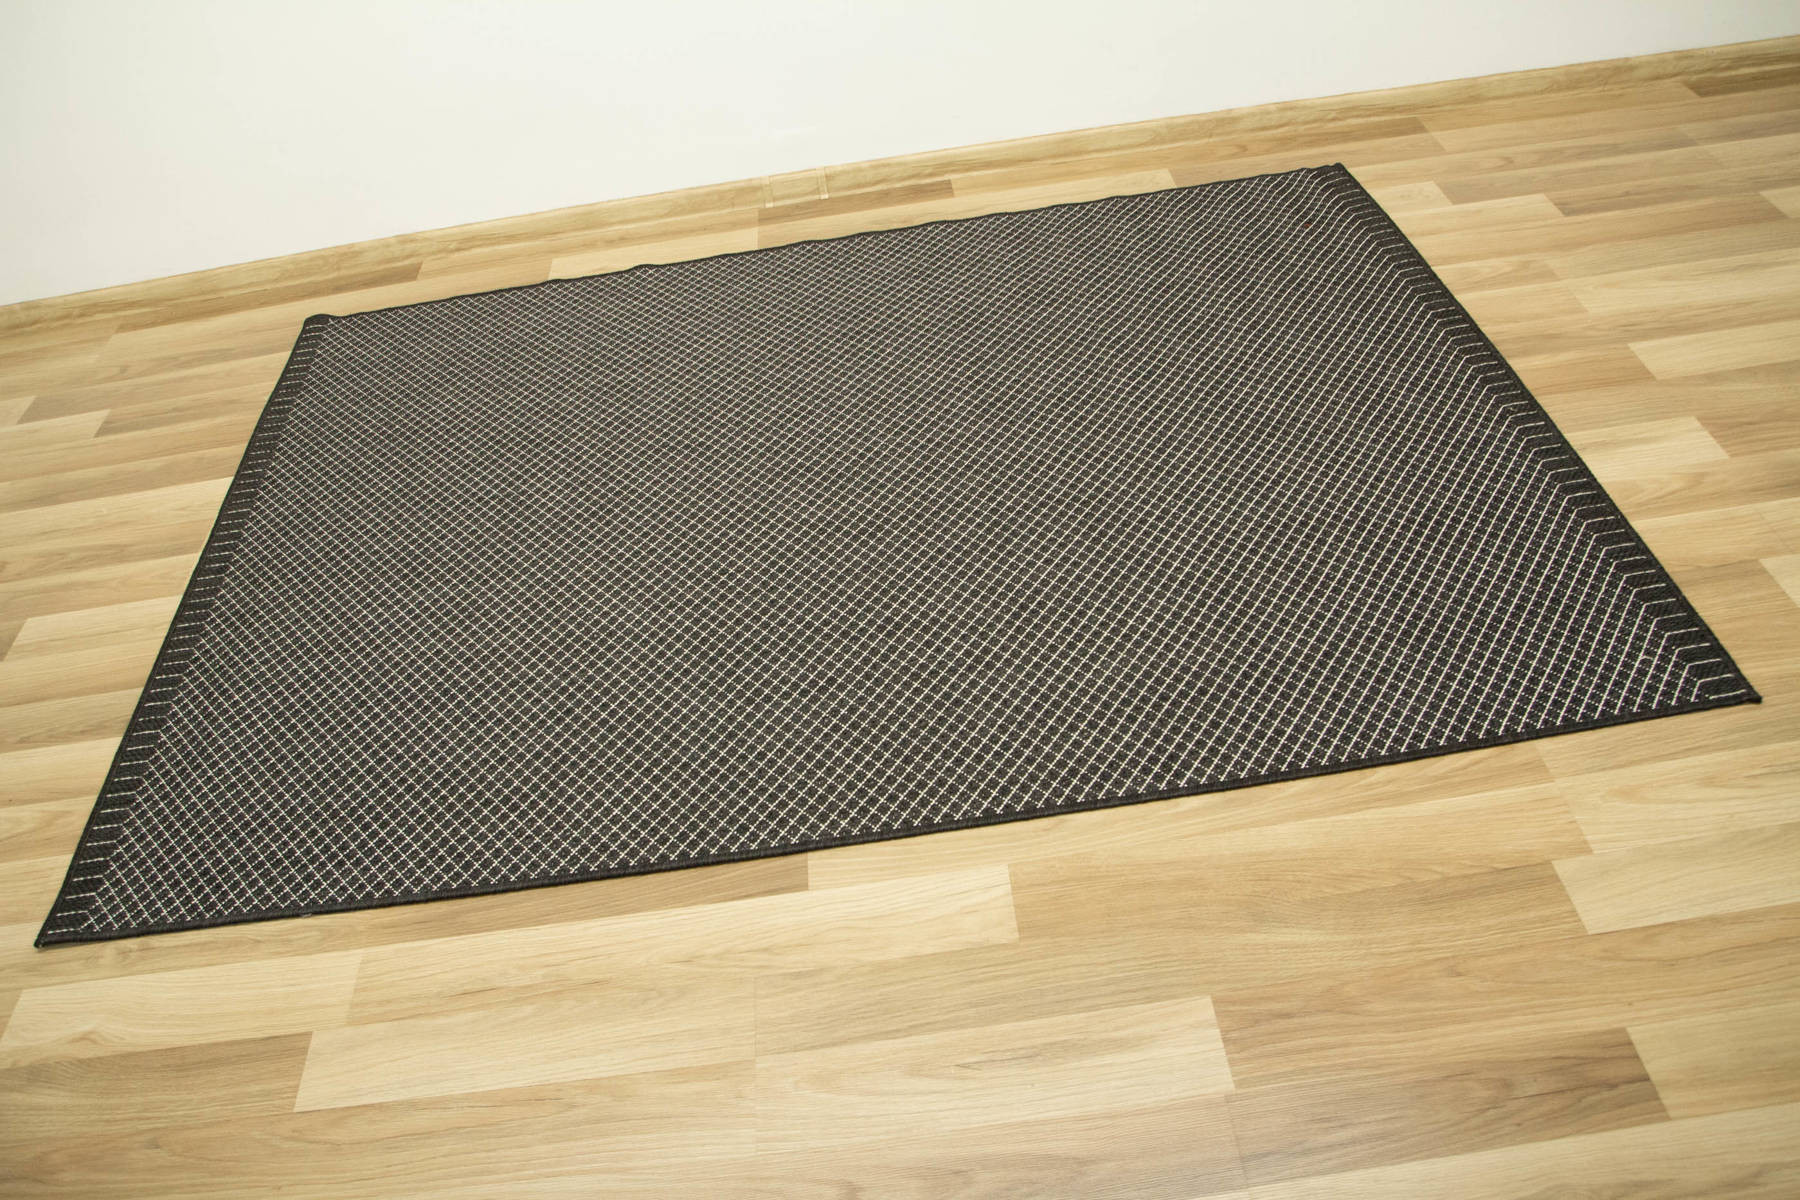 Šnúrkový obojstranný koberec Brussels 205668/10110 antracitový/krémový